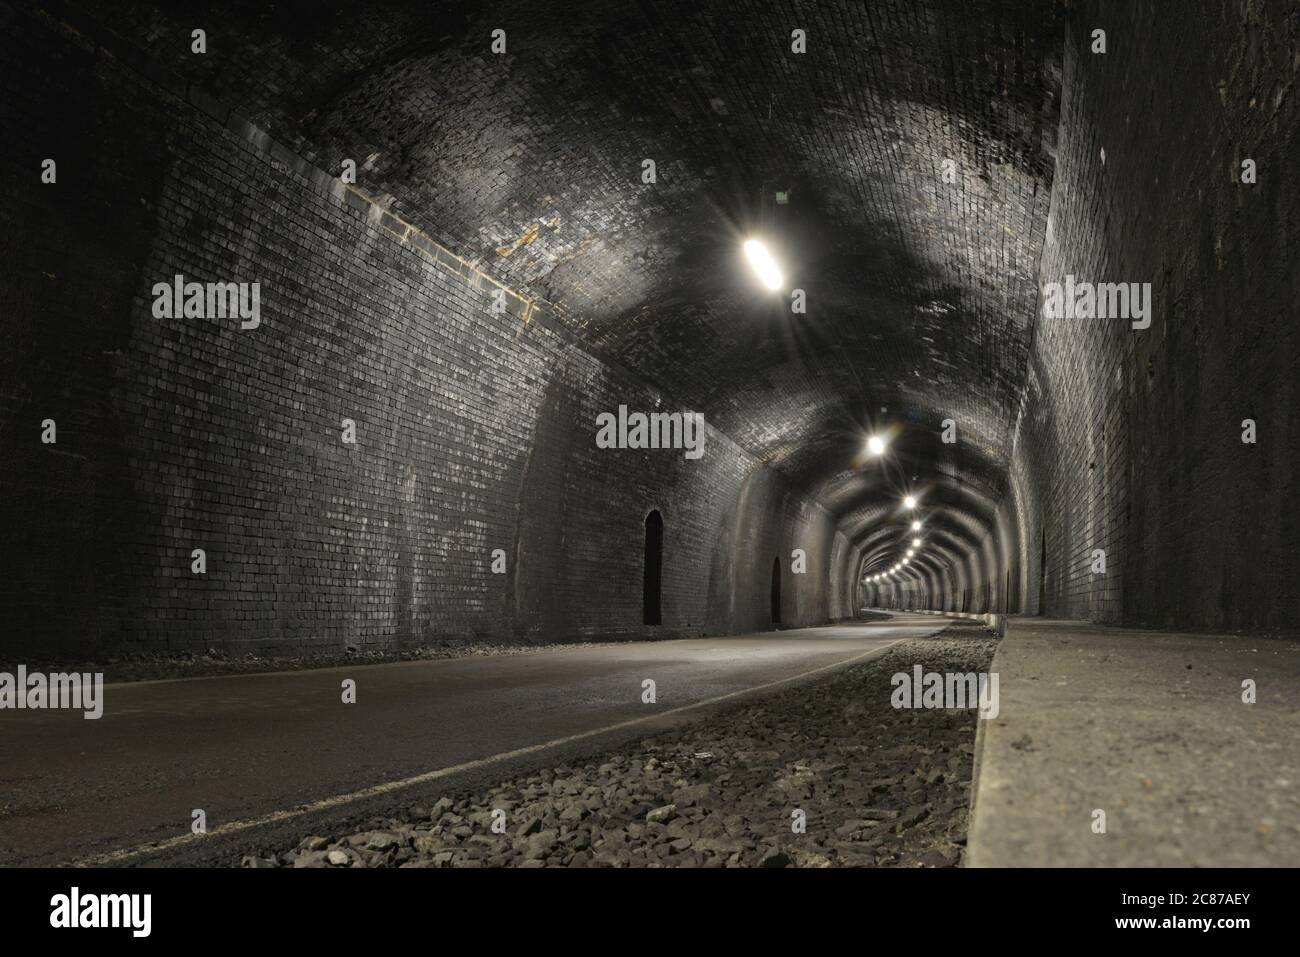 La route de la piste Monsal passe par le tunnel de la pierre d'angle, fait de briques gris foncé, une image basse et grand angle, espace vide et de copie. Tunnel ancien et rustique. Banque D'Images